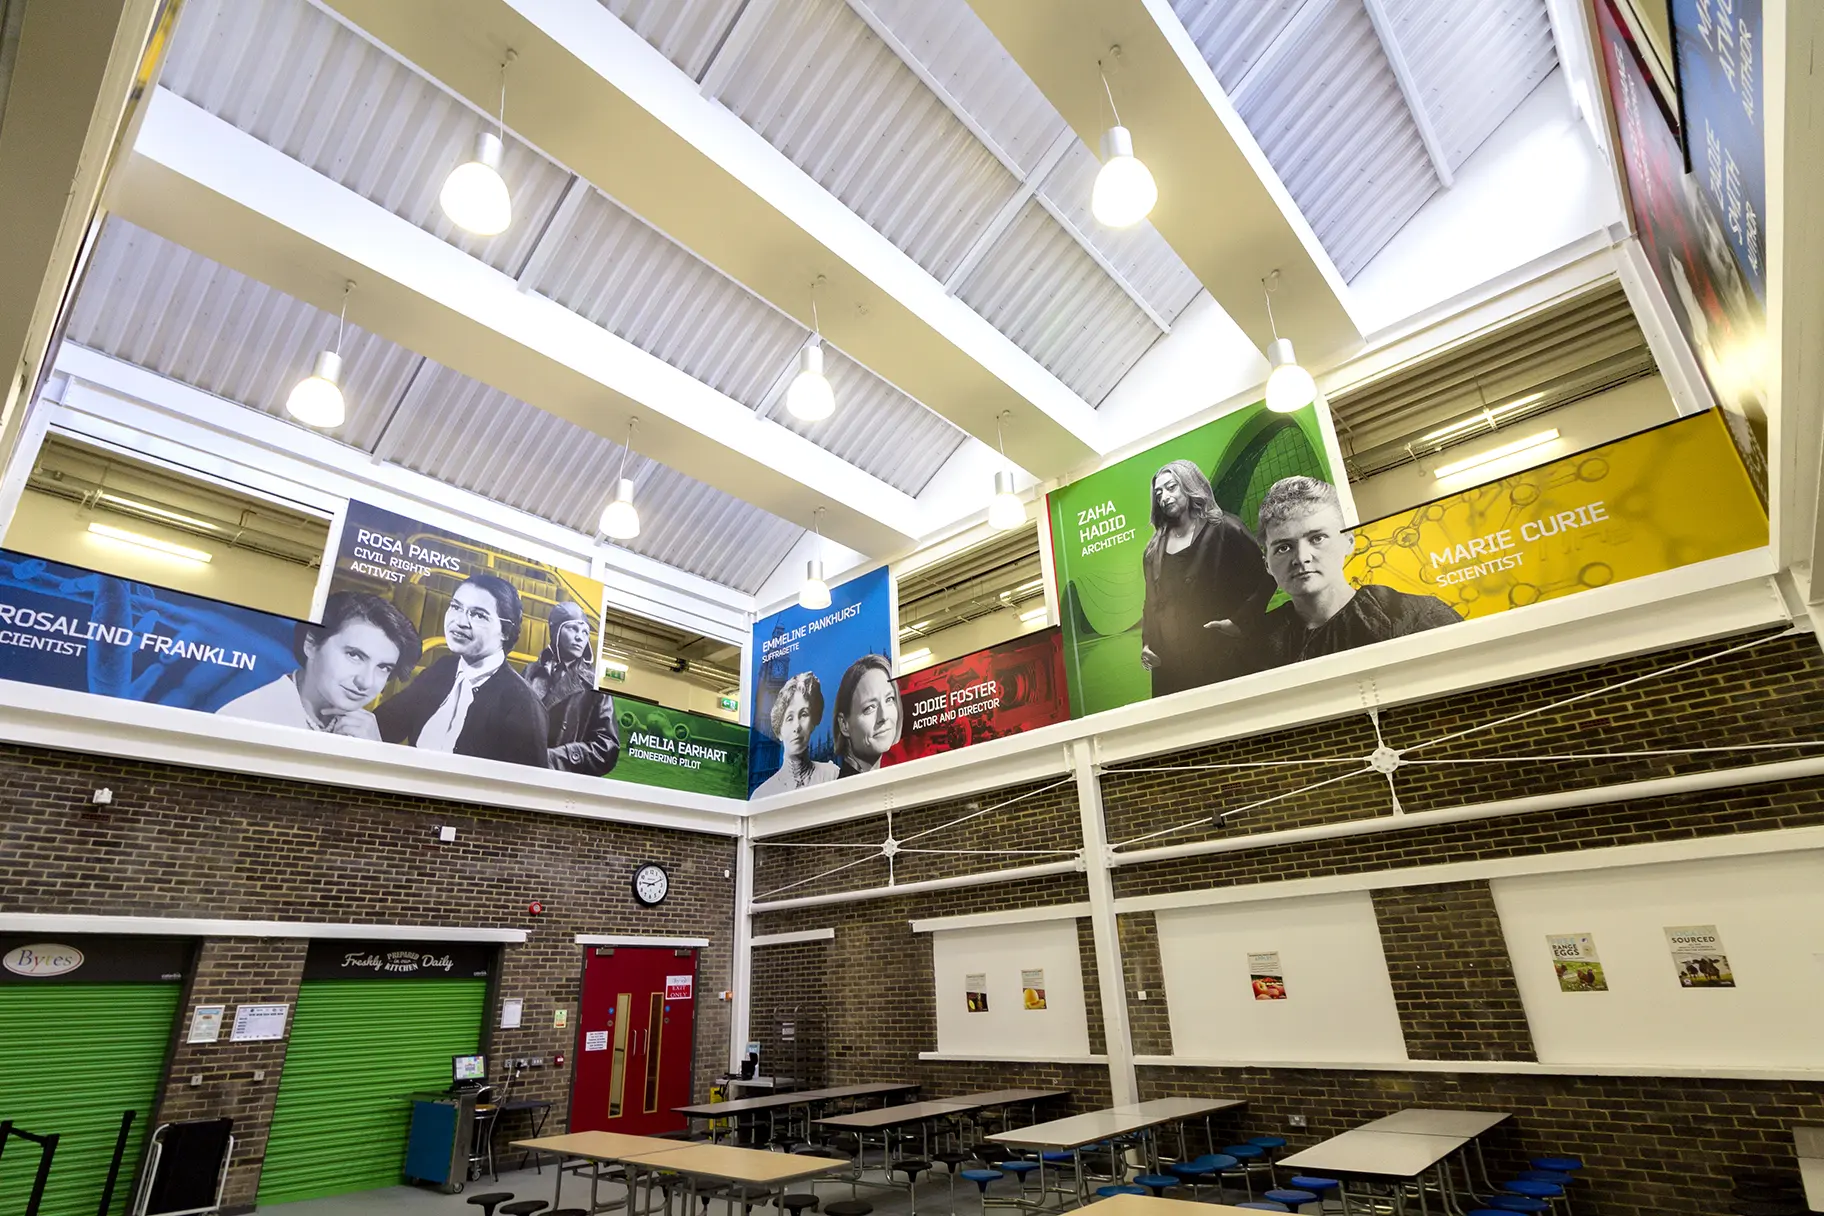 Townley Grammar School inspirational atrium classroom wall art